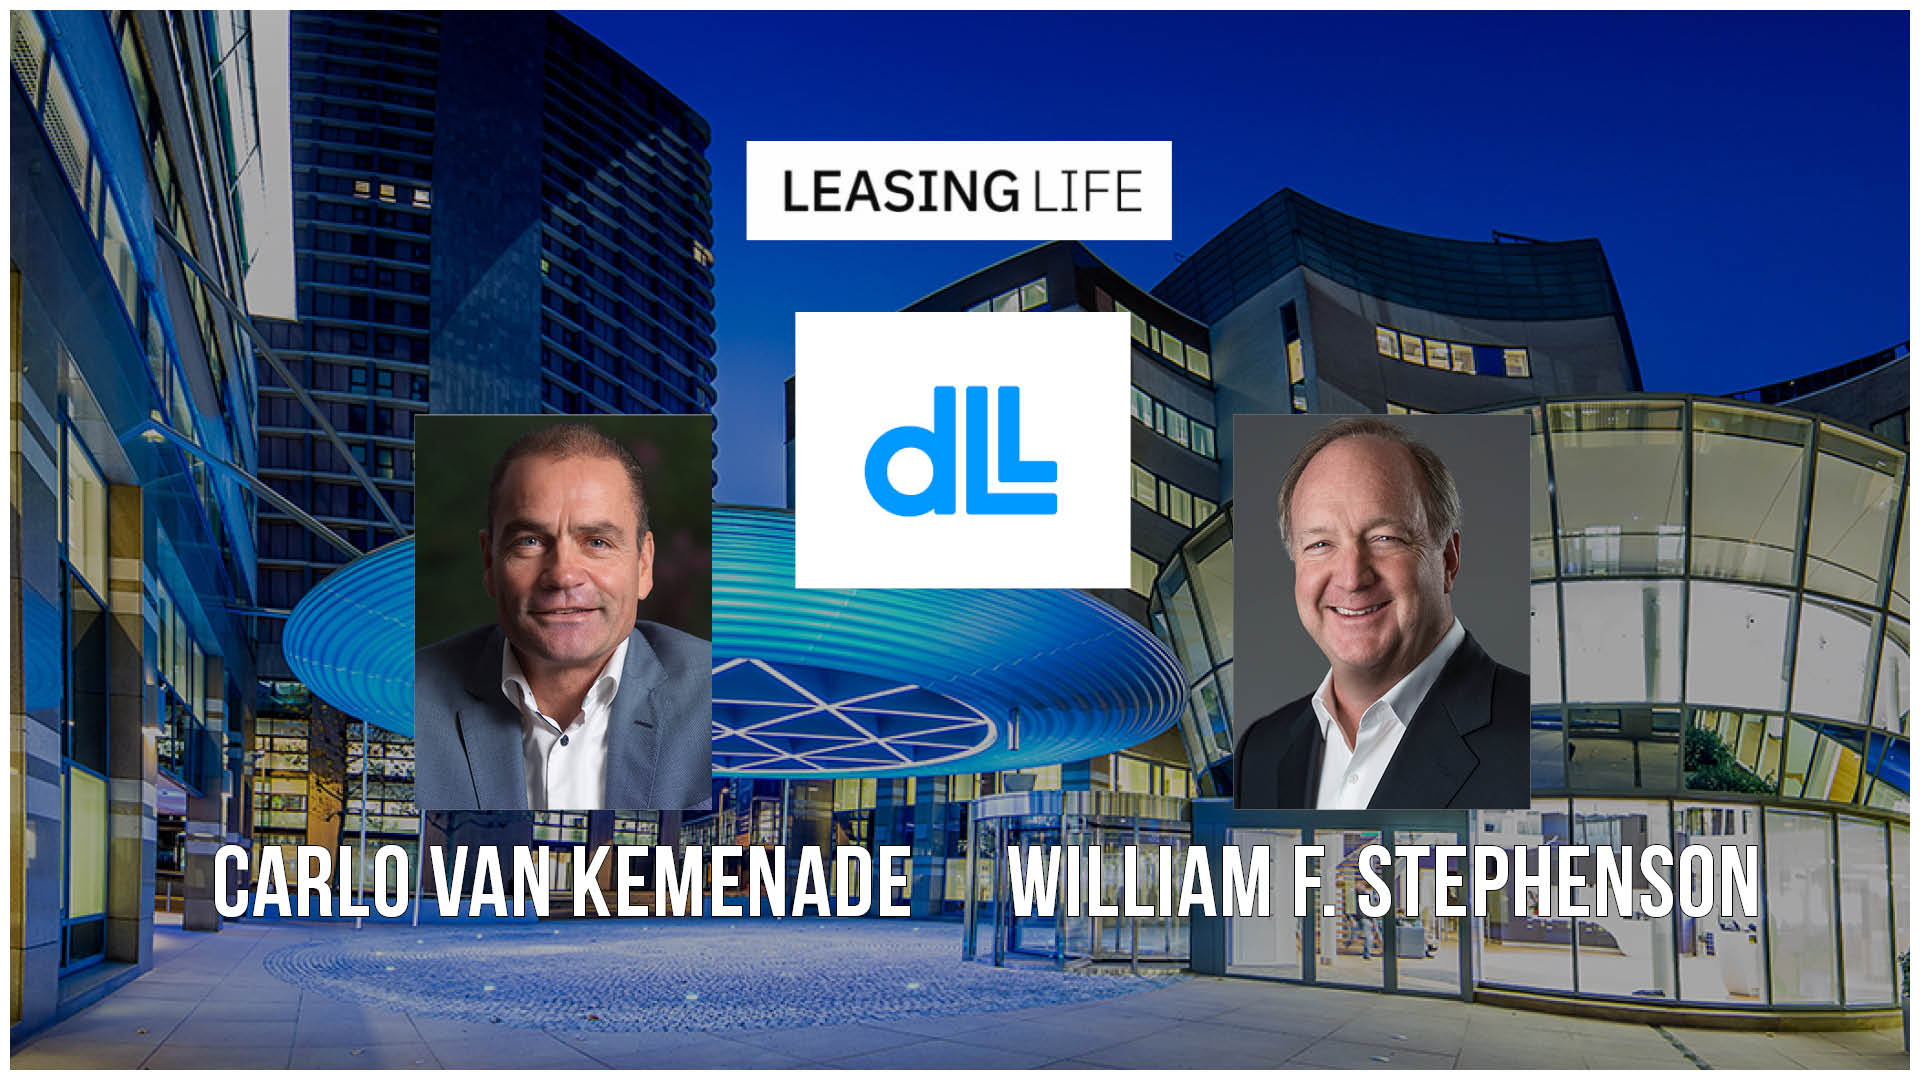 Carlo van Kemenade appointed as CEO of DLL